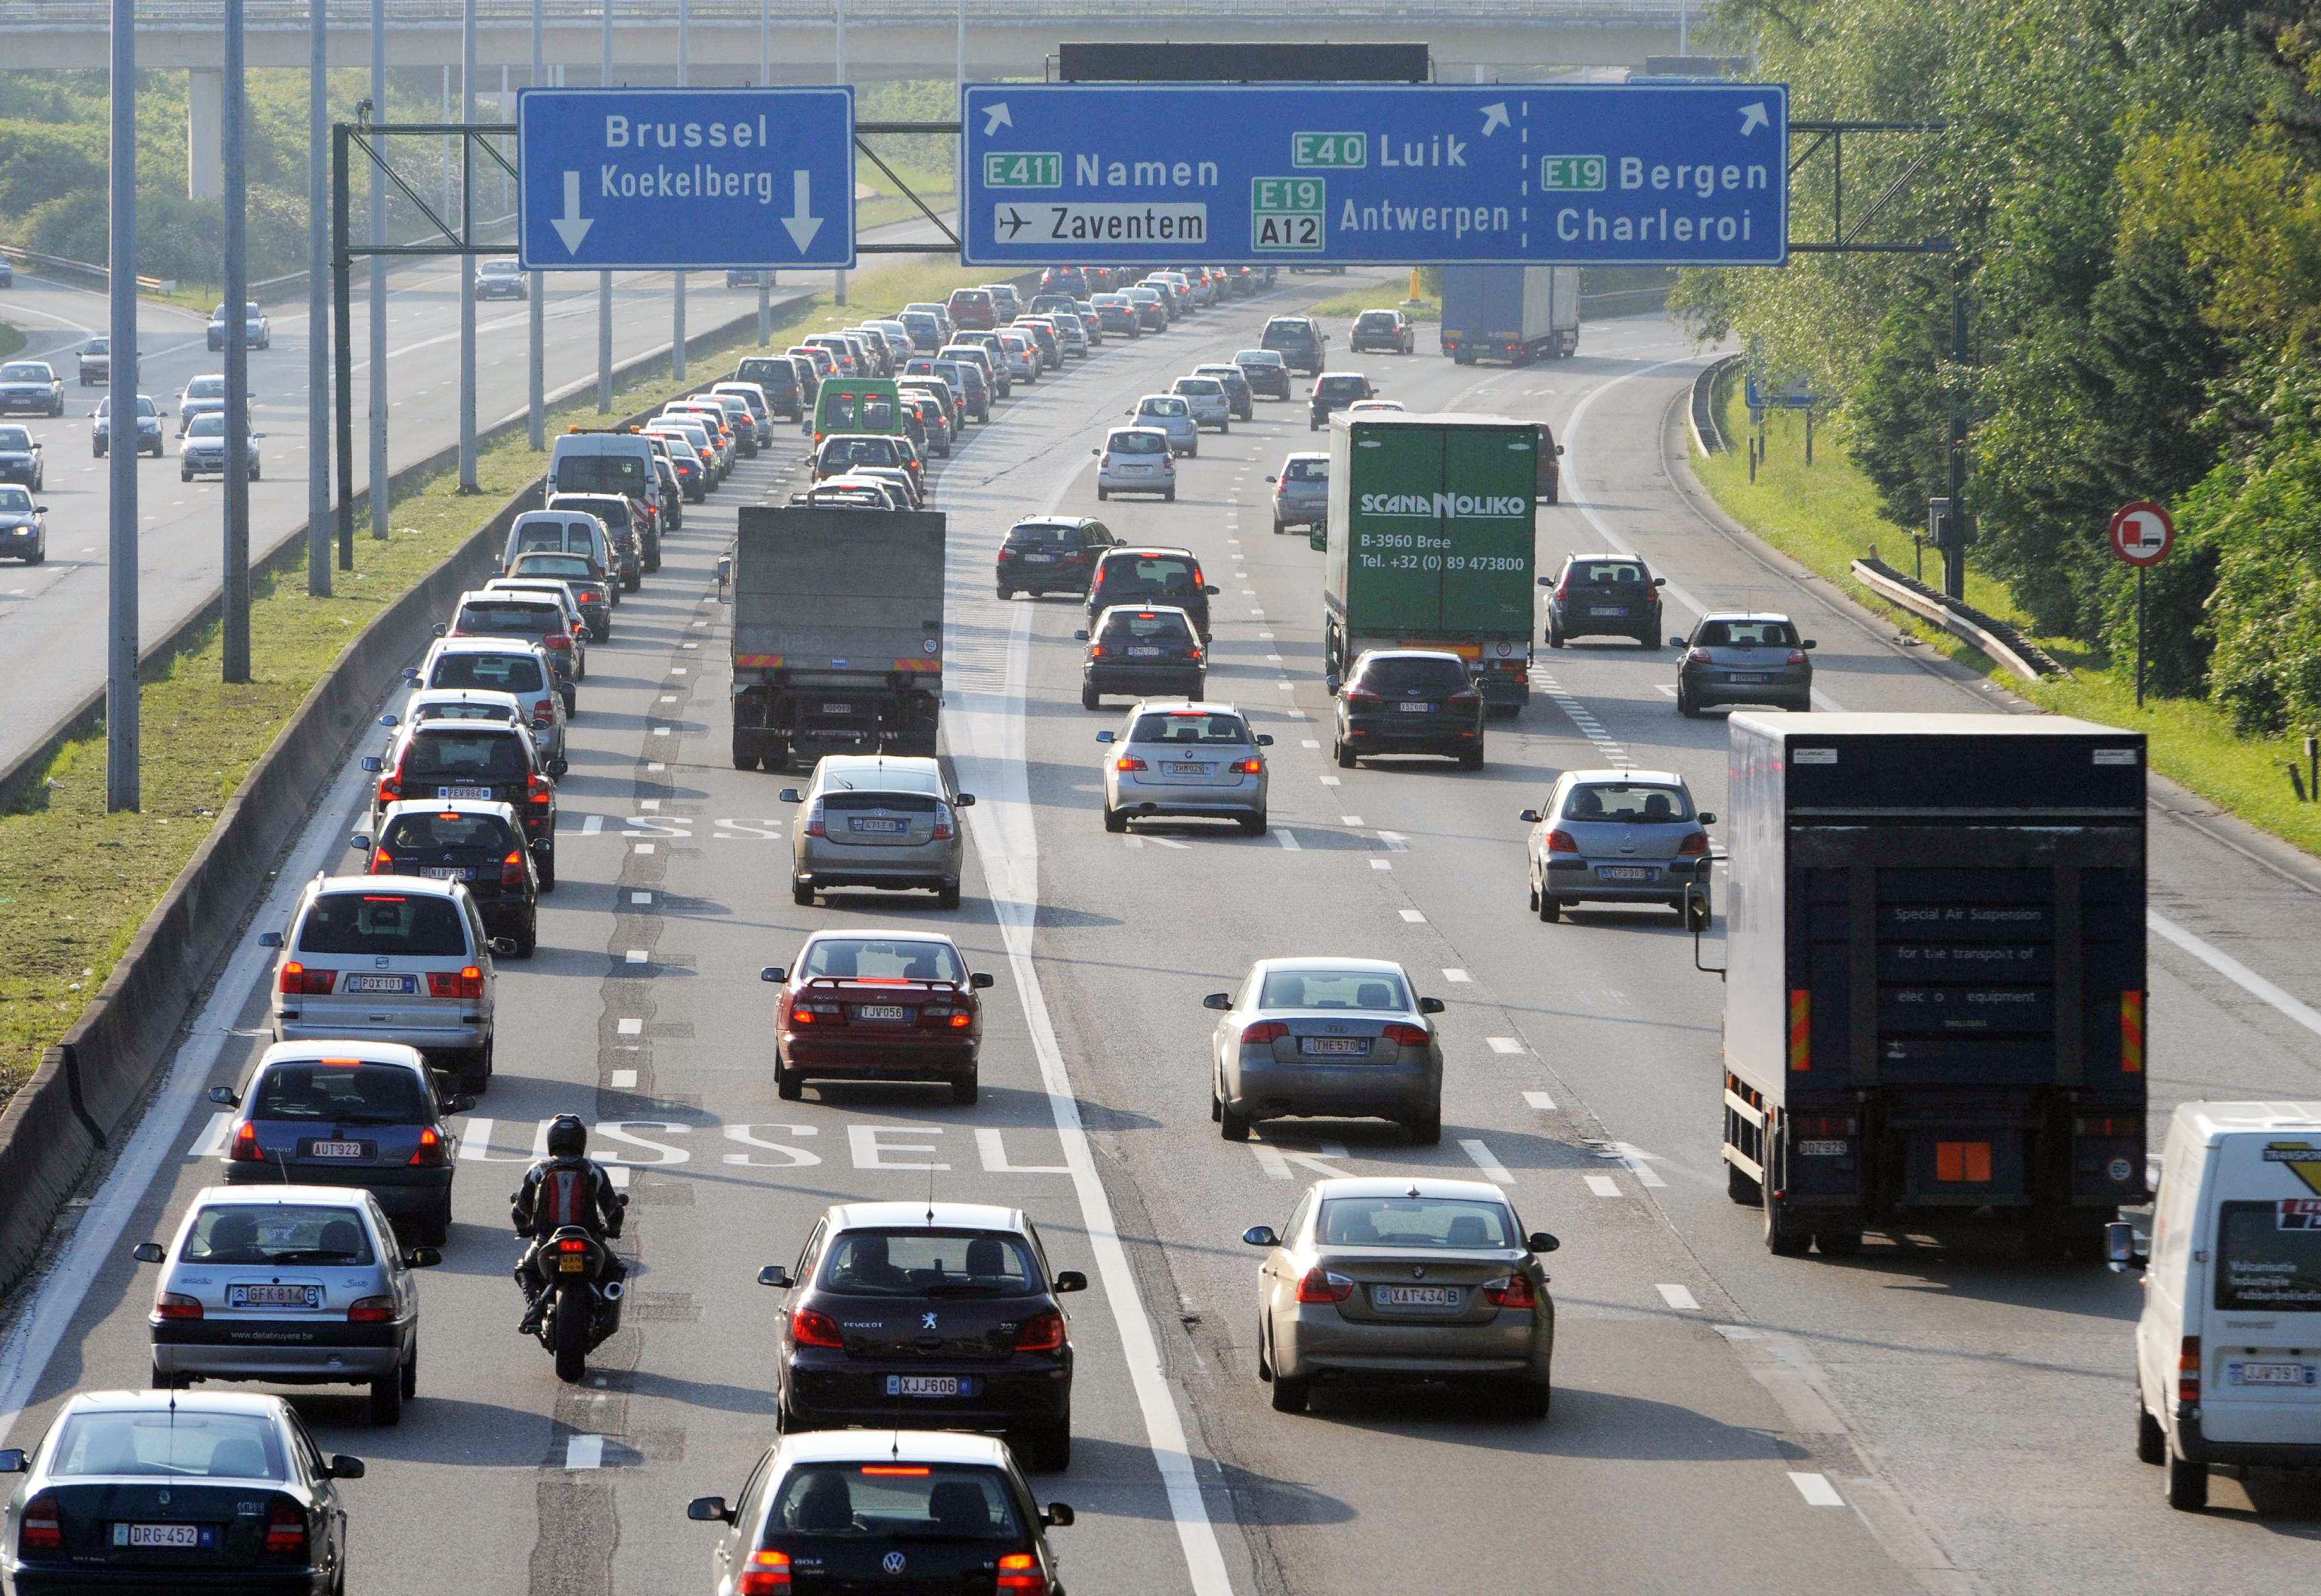 Touring: '67% van de Belgische automobilisten is tegen een stadstol'